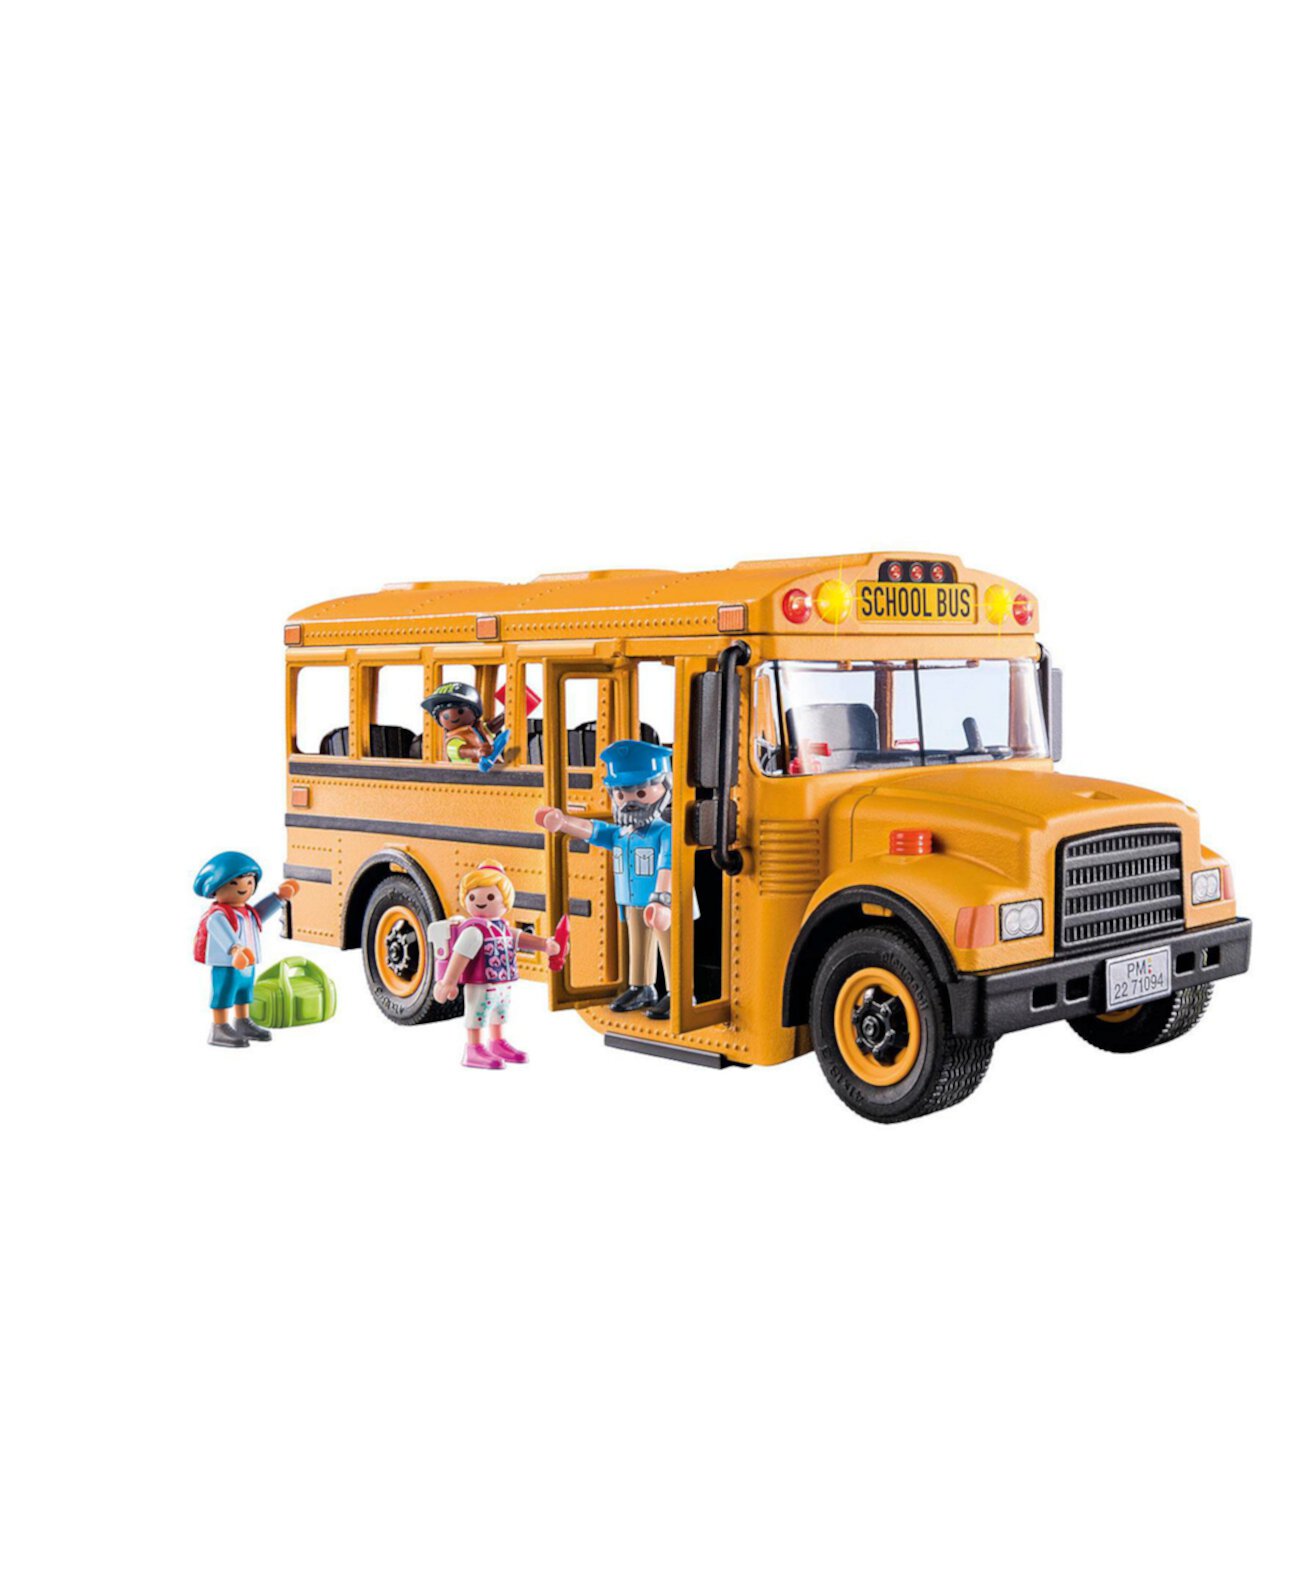 Школьный автобус Playmobil